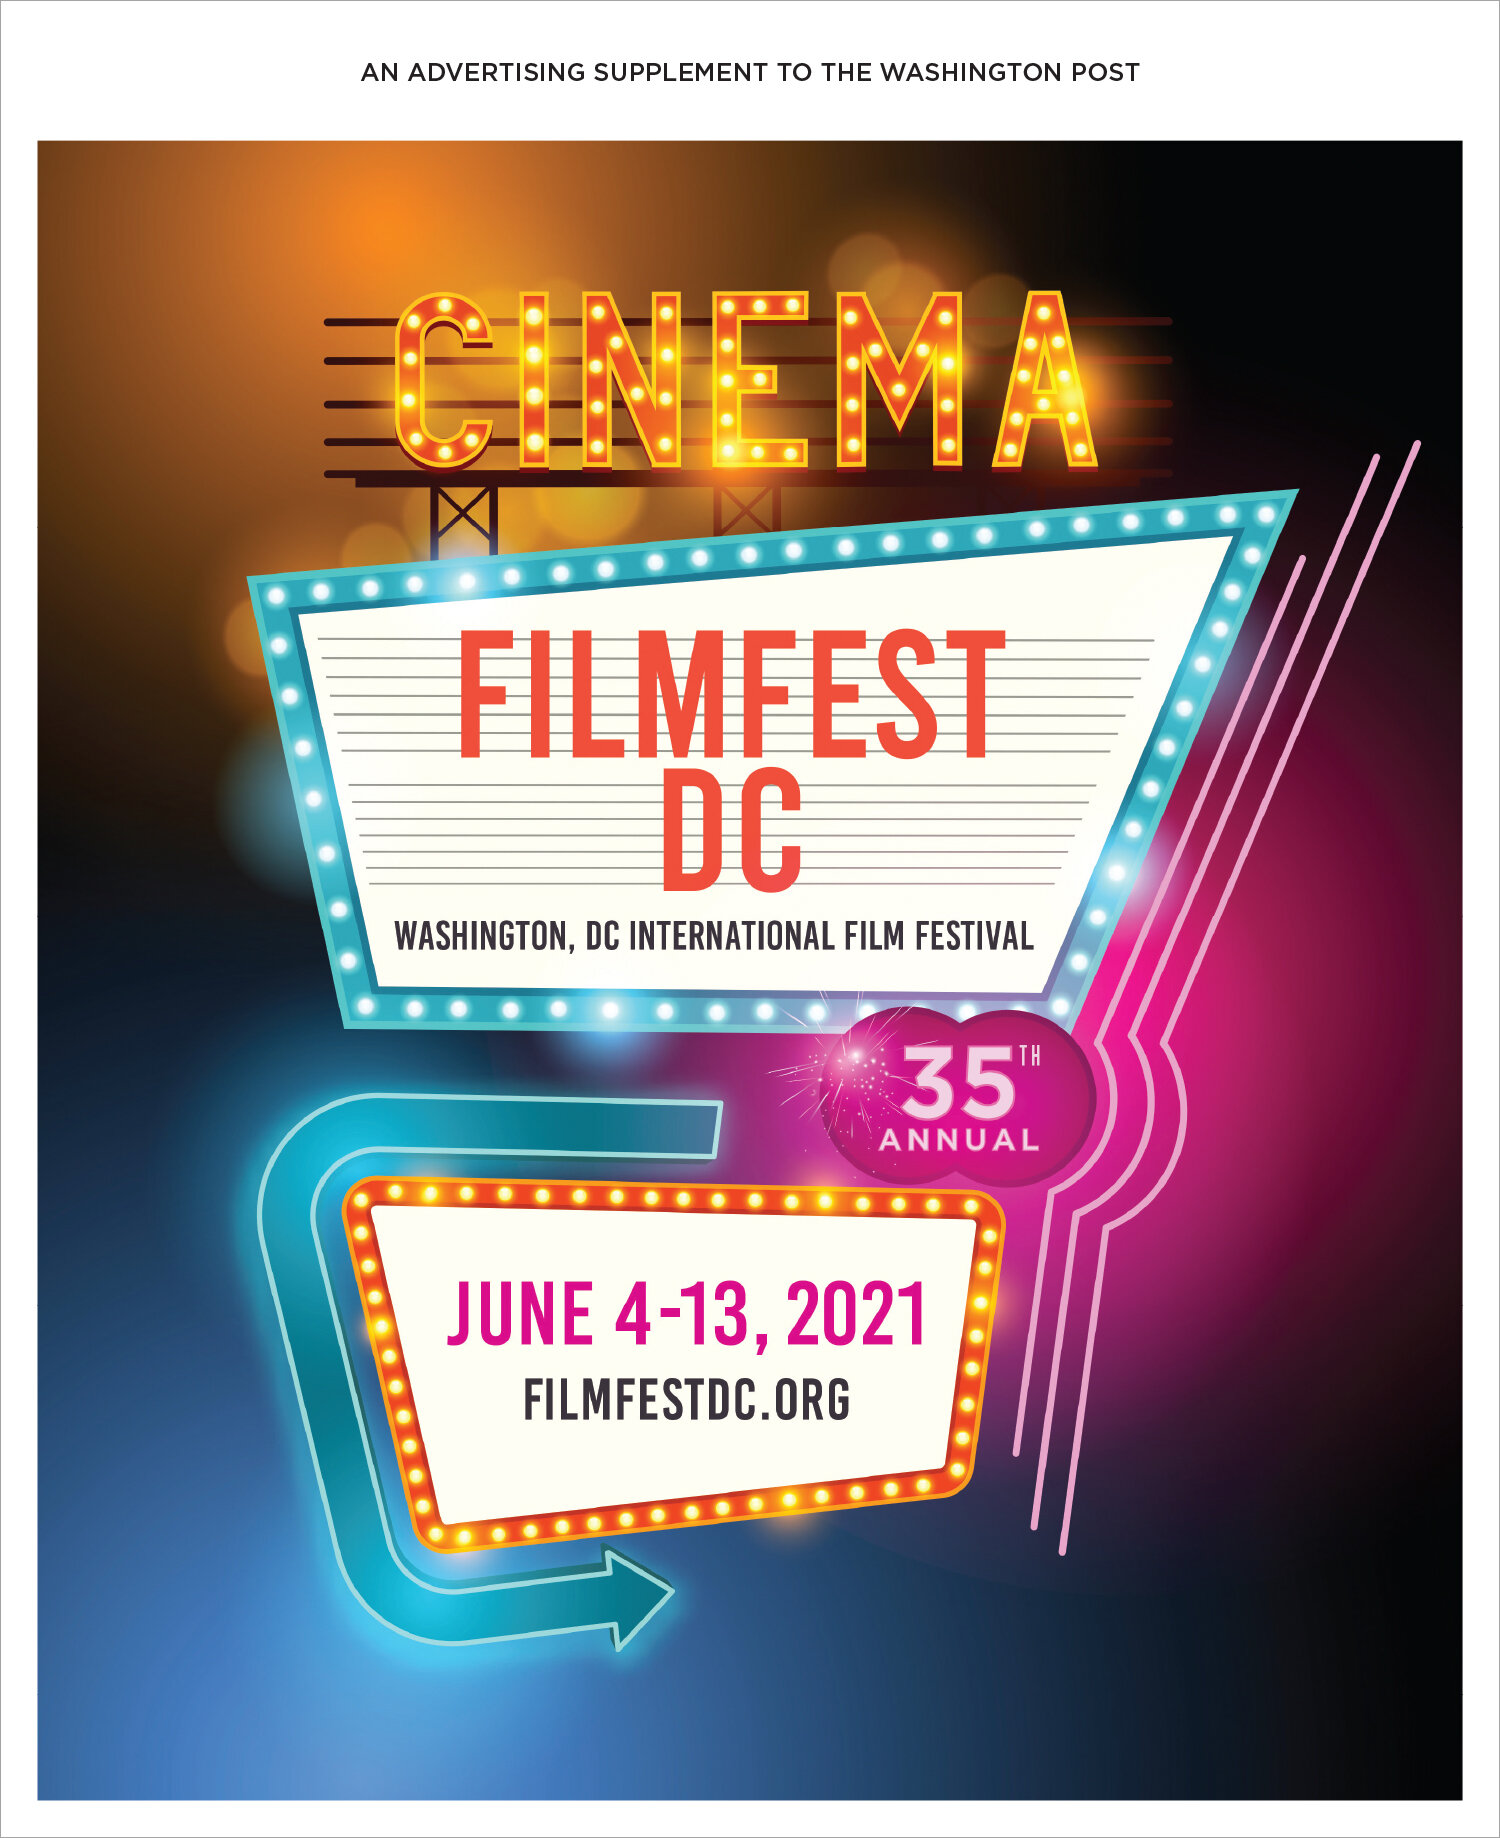 2021 FilmFestDC WAPO FINAL.jpg